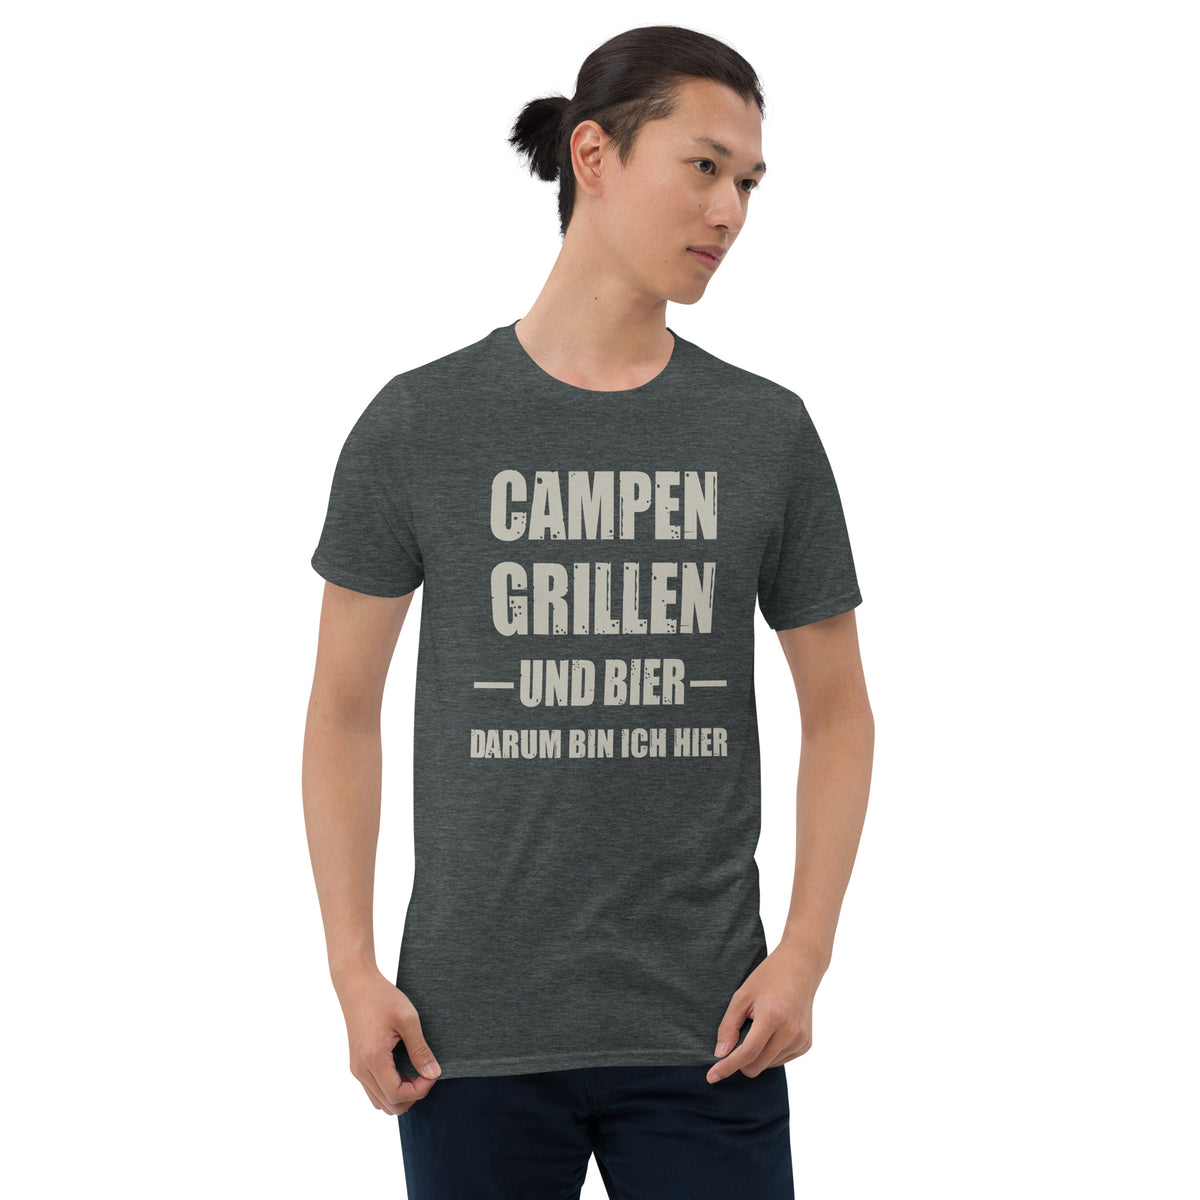 Cooles Herren Spruch Shirt "Campen Grillen und Bier"